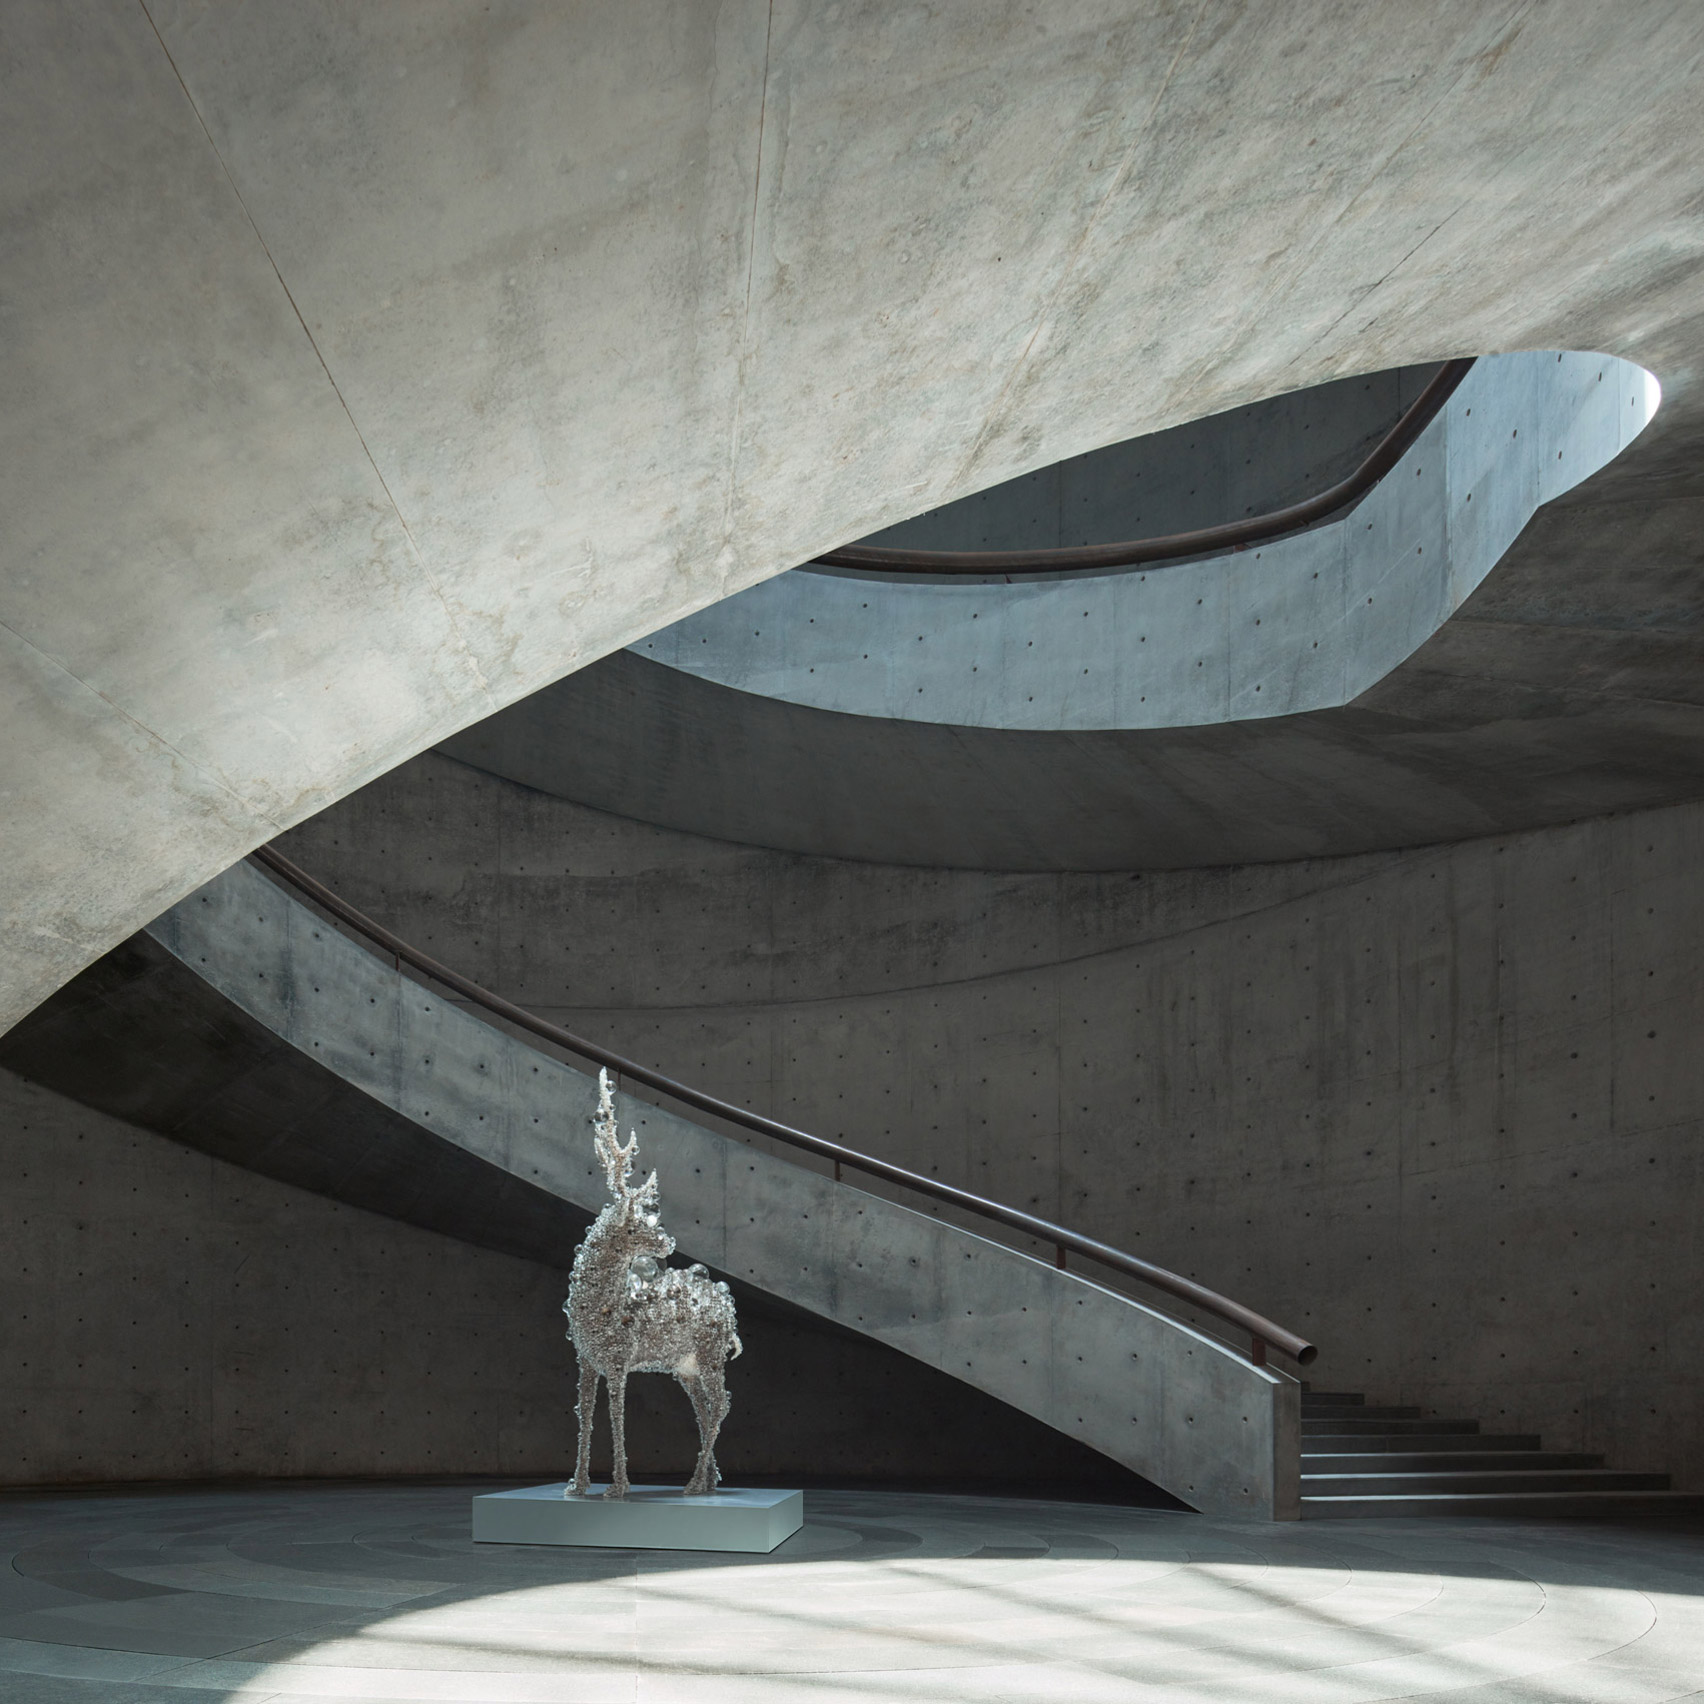 The atrium inside He Art Museum, China, by Tadao Ando